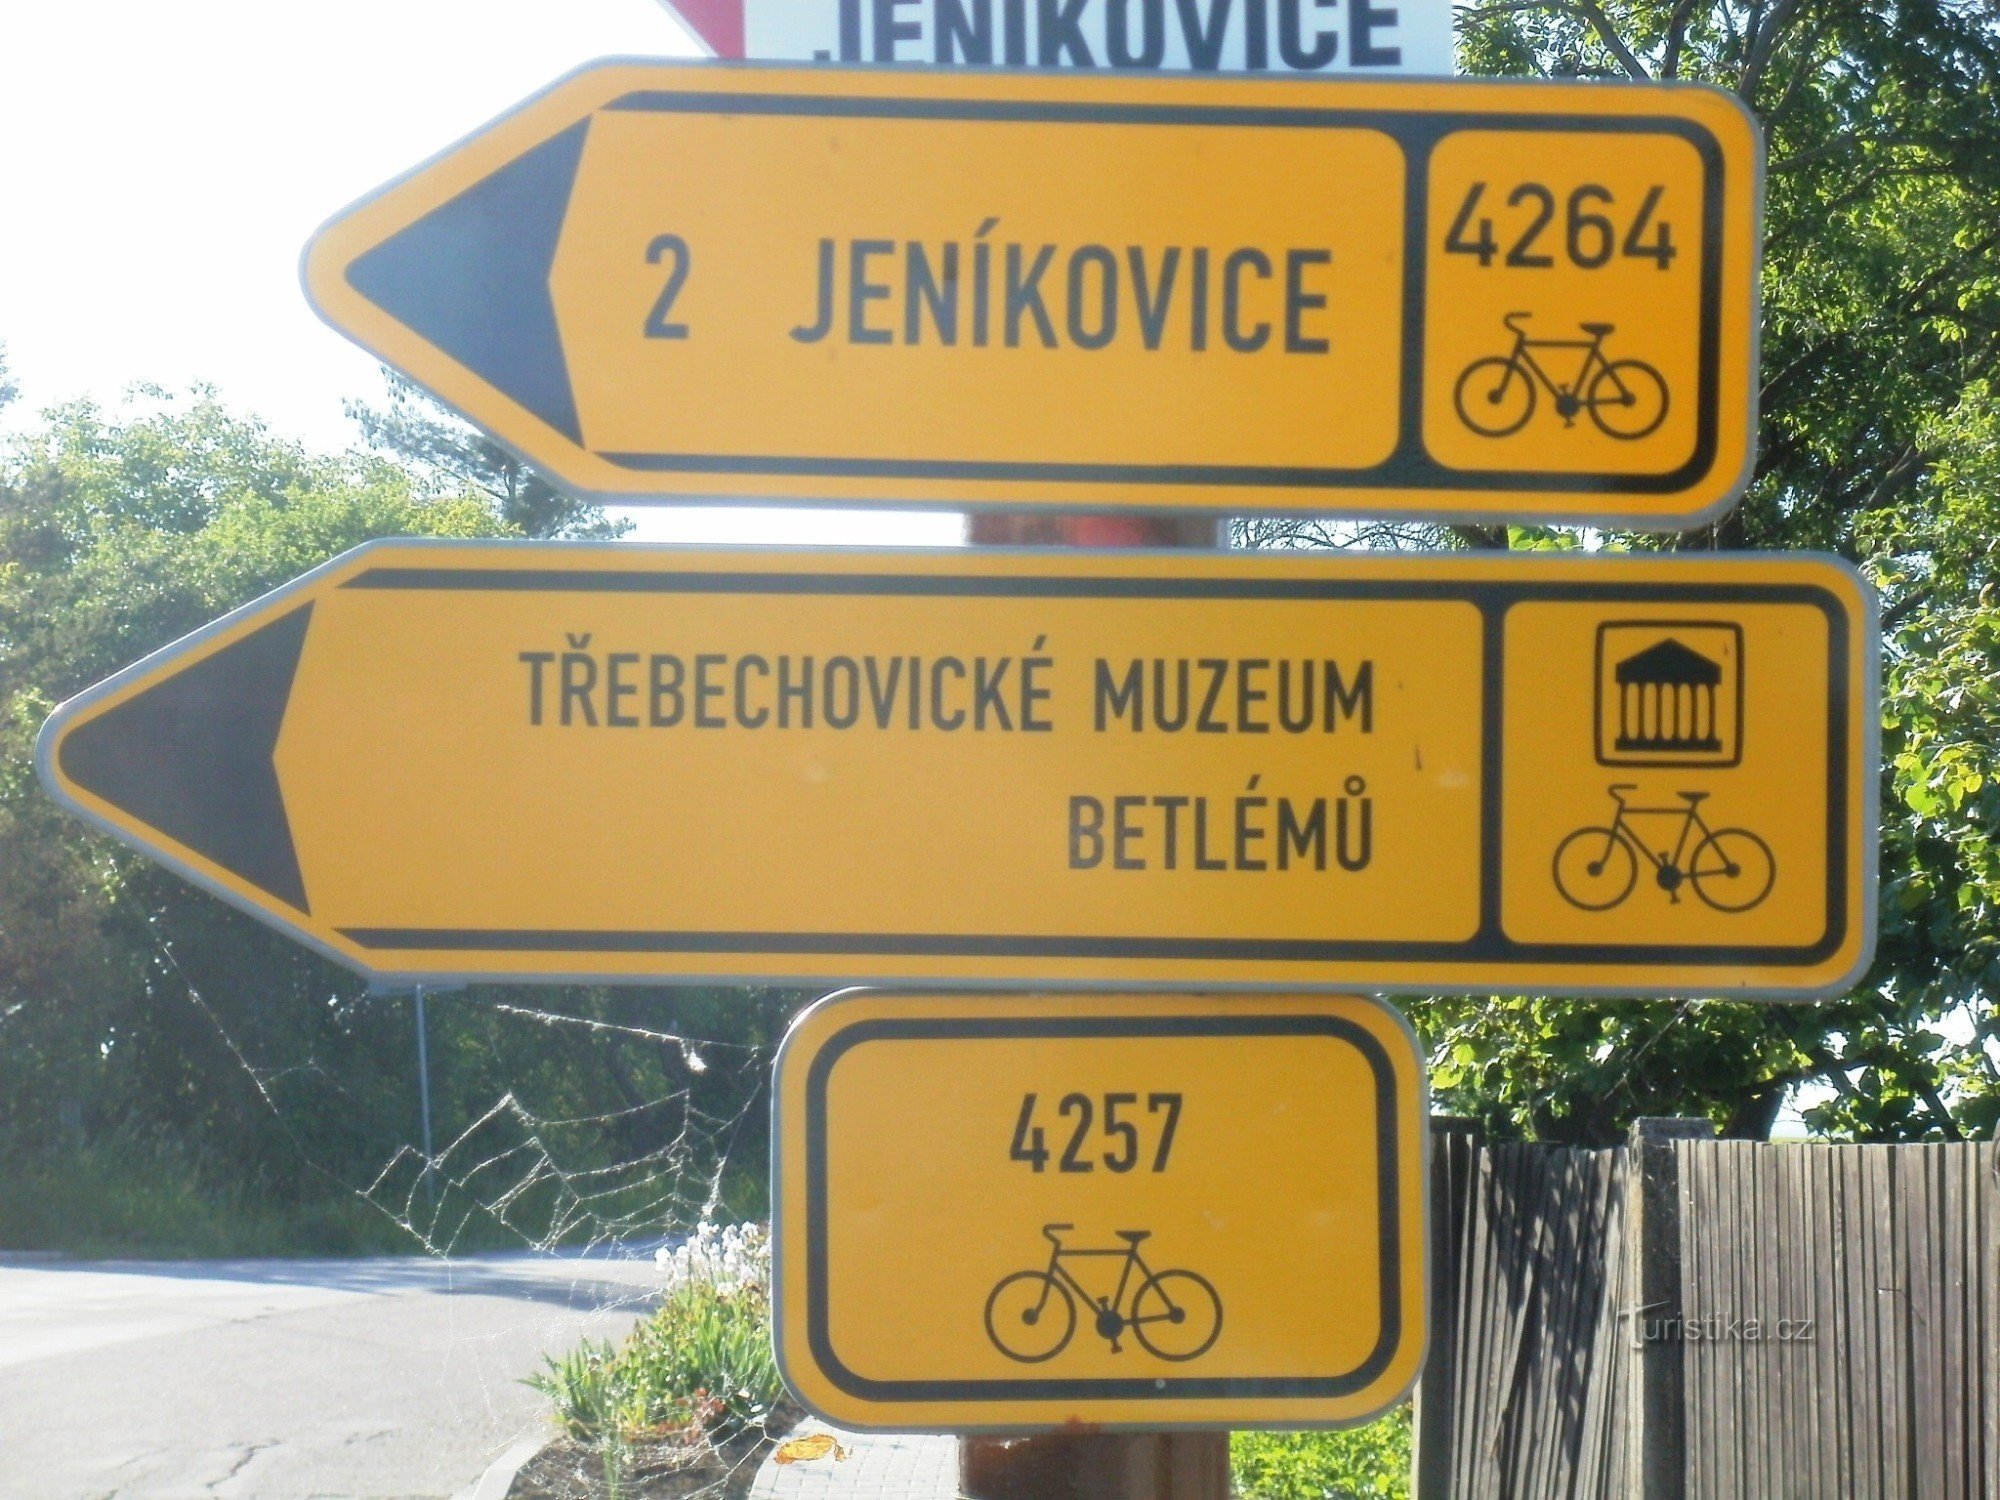 cykloturist korsning - Libníkovice, vid korsningen